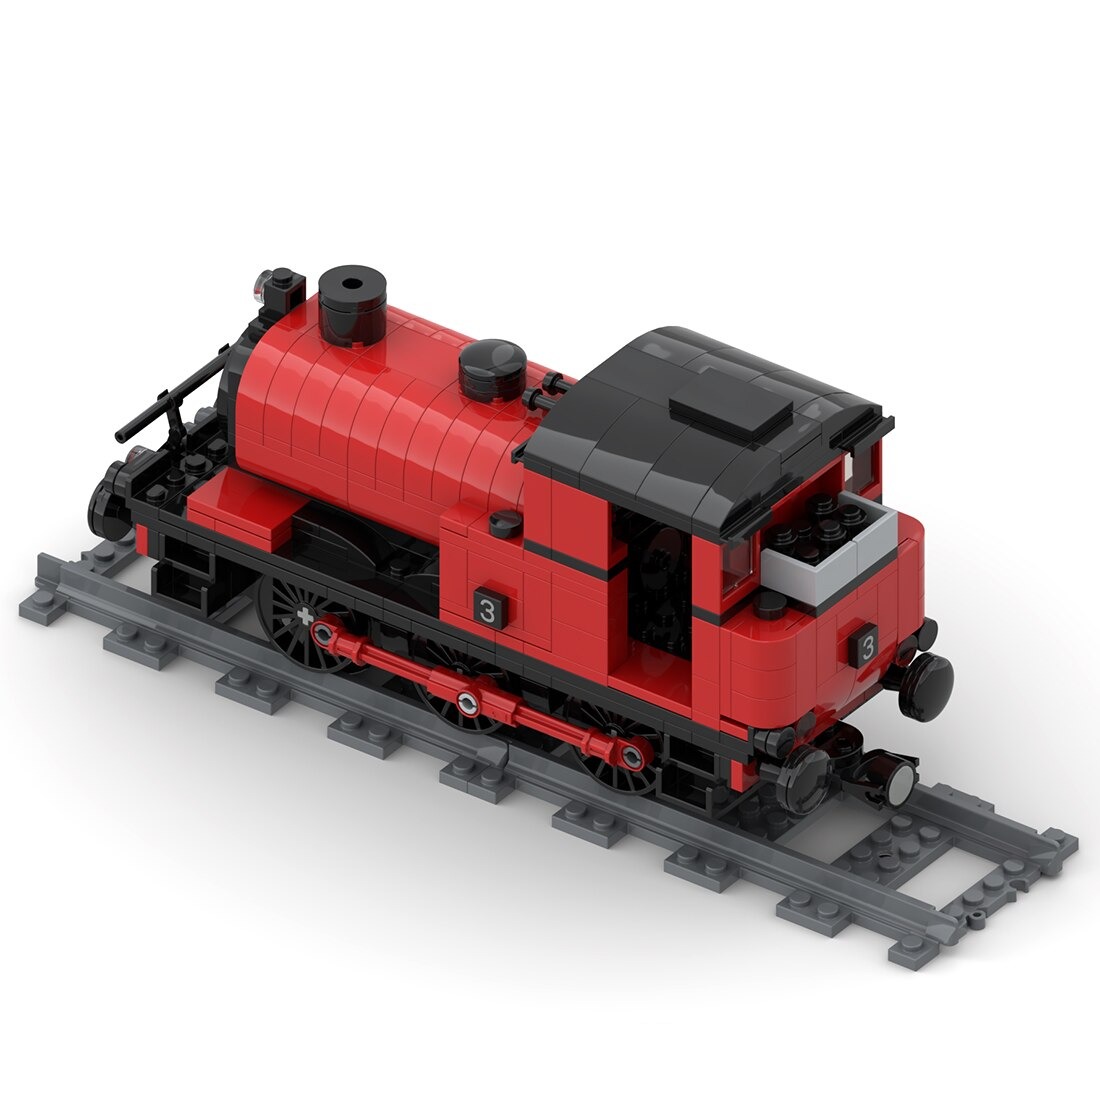 Saddle Tank Engine Train Moc 42439 4